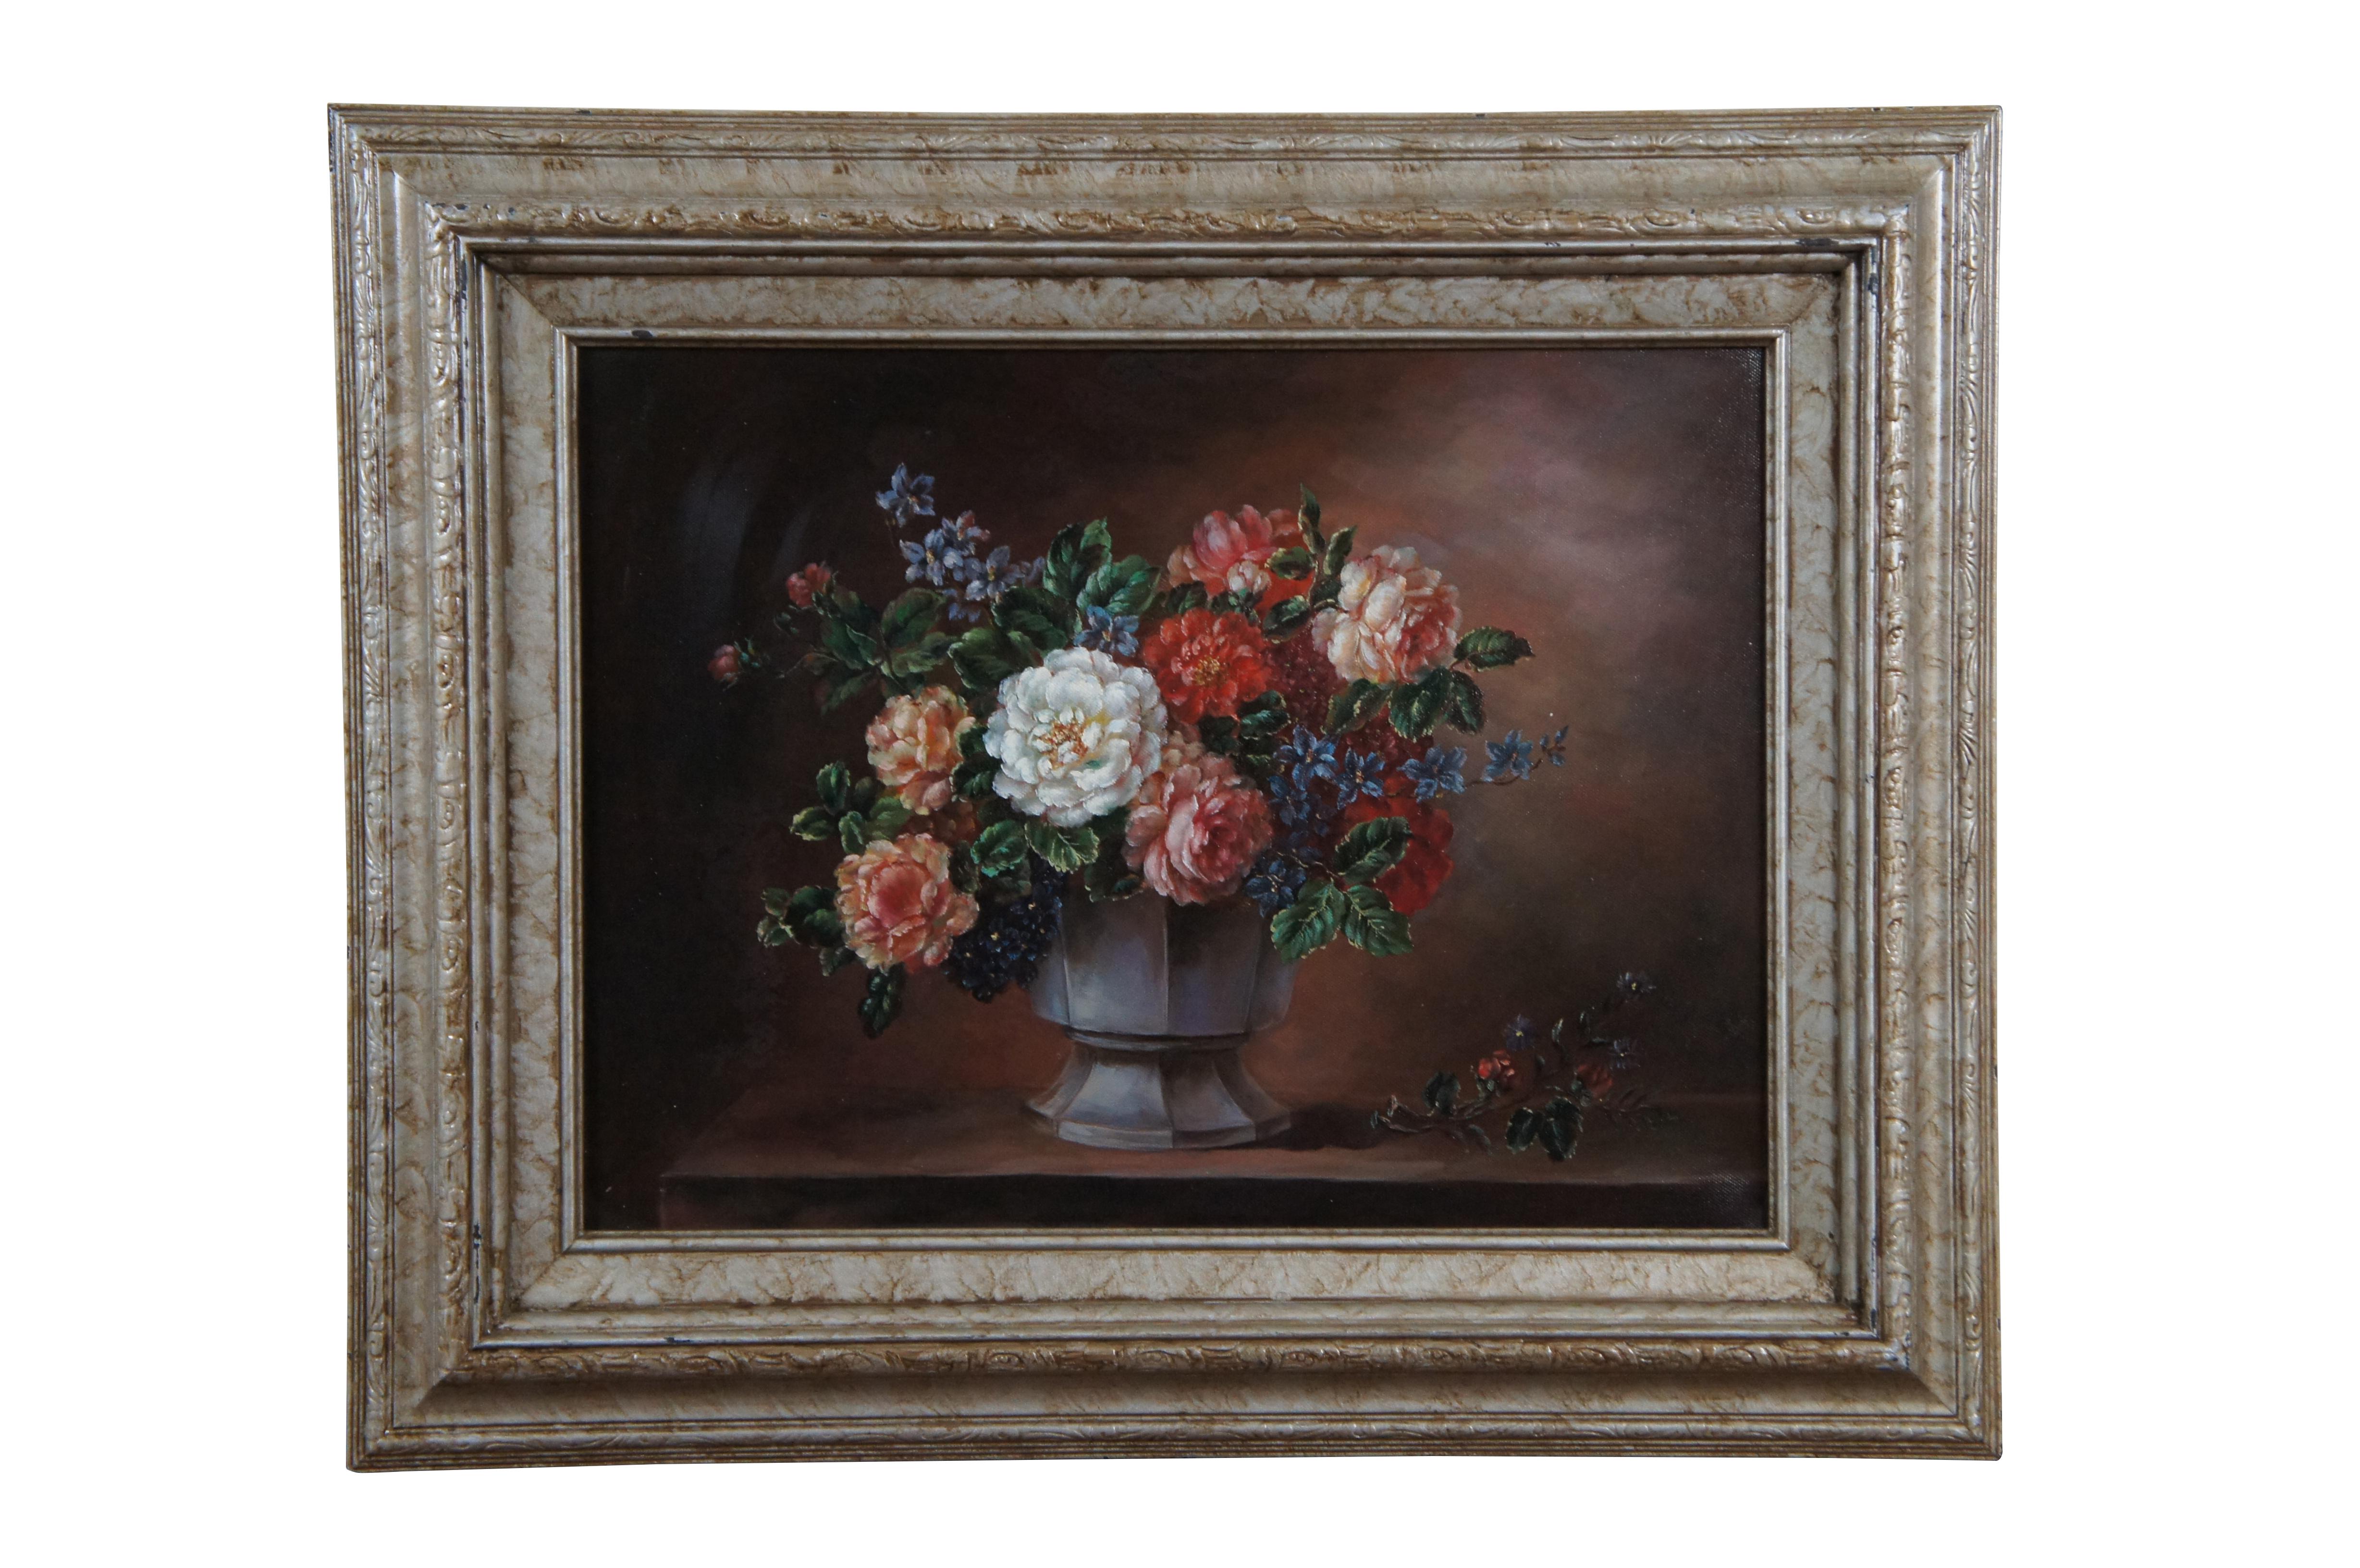 Paire de natures mortes peintes à la main à l'huile sur toile à la fin du 20e siècle, représentant des bouquets de fleurs assorties dans des vases. Pas de signature. Encadrés dans des cadres en champagne marbré avec des biseaux en relief légèrement